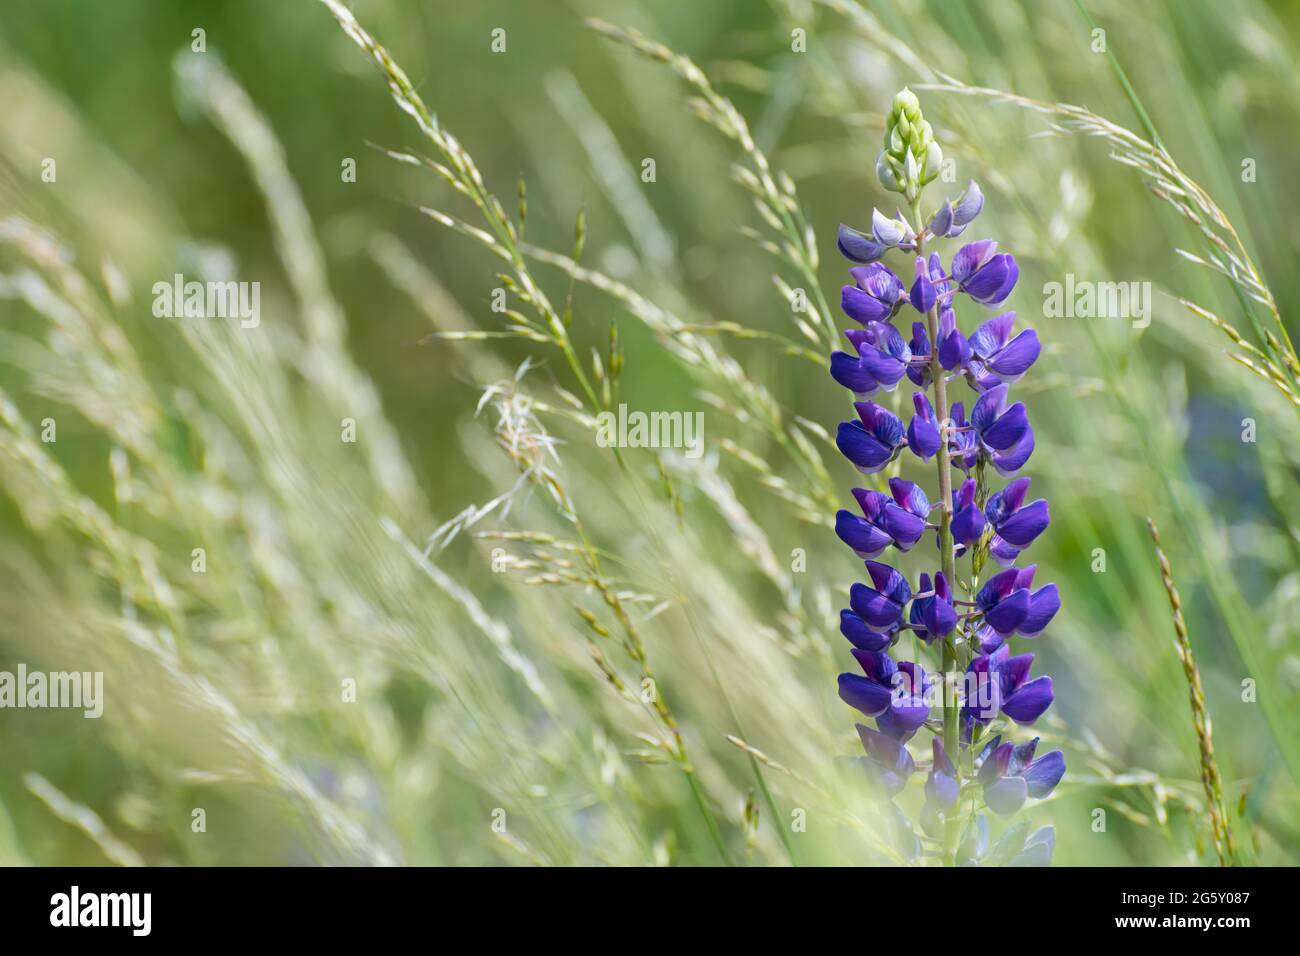 Eine großblättrige Lupinenblume und Grasstachelchen in grünen Wiesendetails. Lupinus polyphyllus. Wunderschöne blau-violette Blüte. Giftige mehrjährige Pflanze. Stockfoto